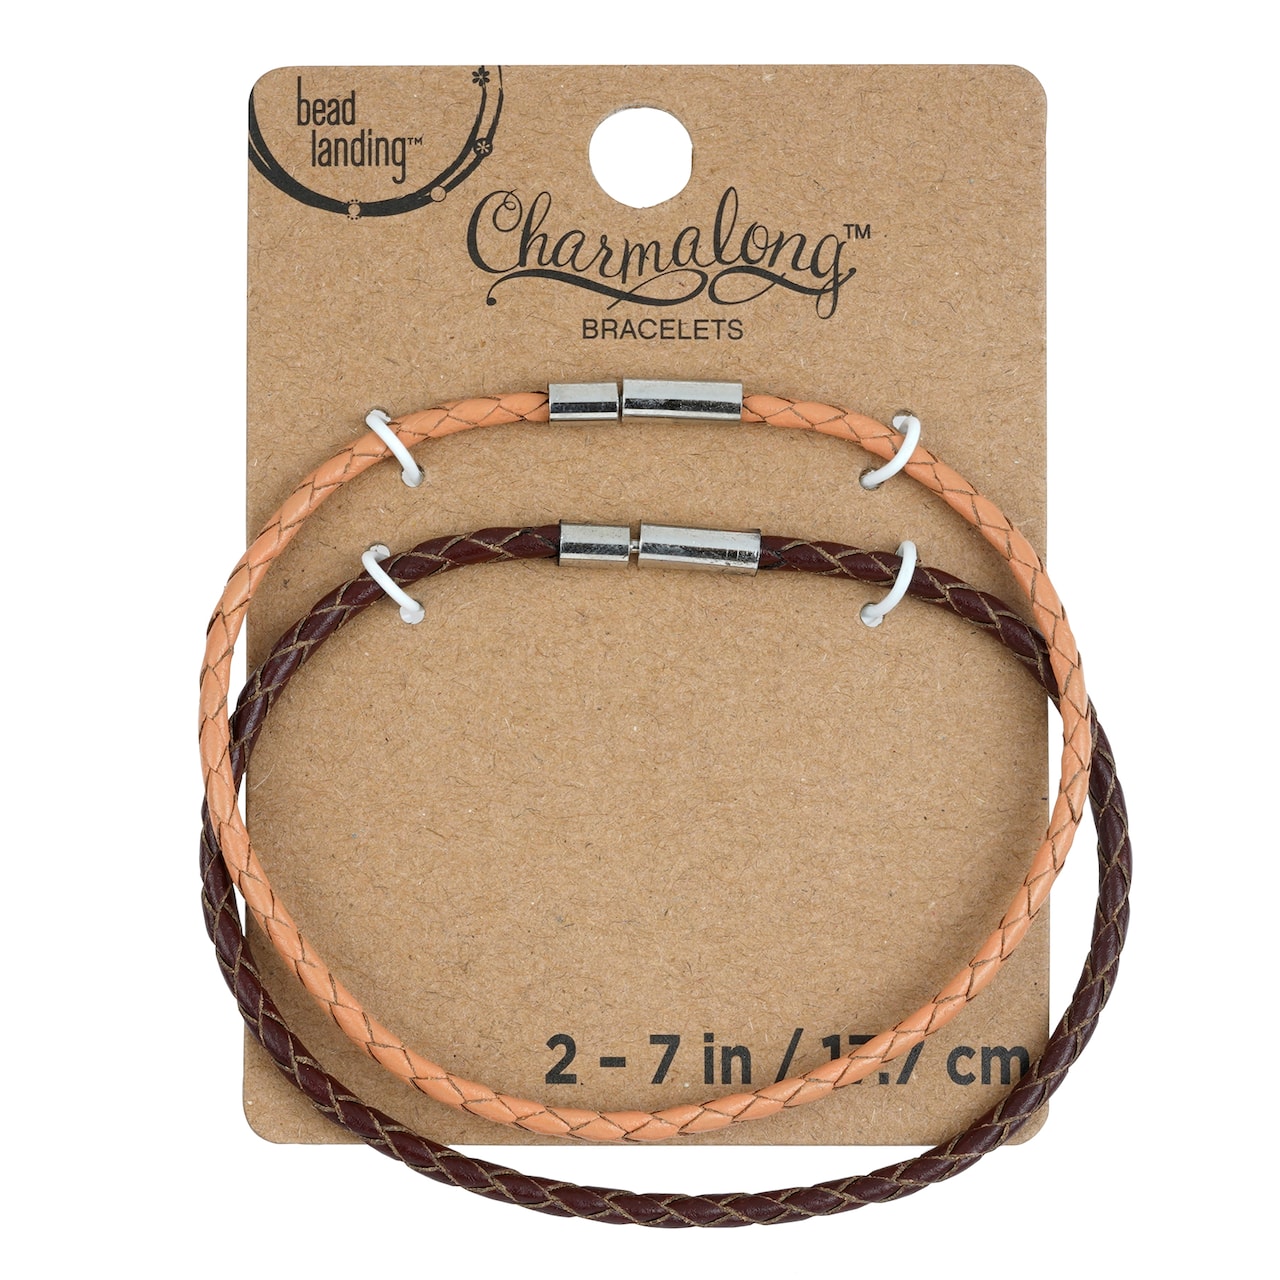 Charmalong&#x2122; Tan &#x26; Brown Bracelets by Bead Landing&#x2122;